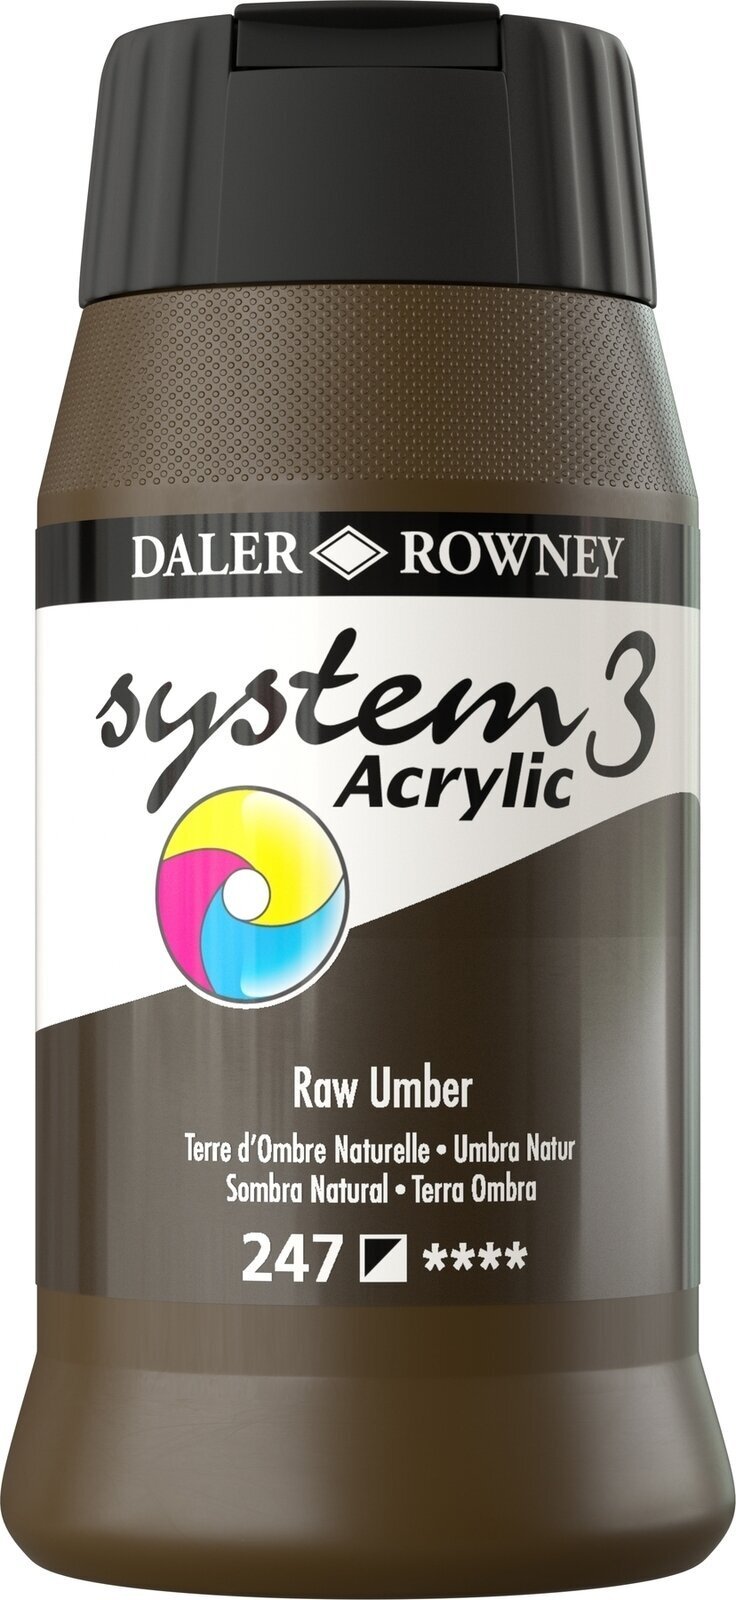 Akryylimaali Daler Rowney System3 Akryylimaali Raw Umber 500 ml 1 kpl